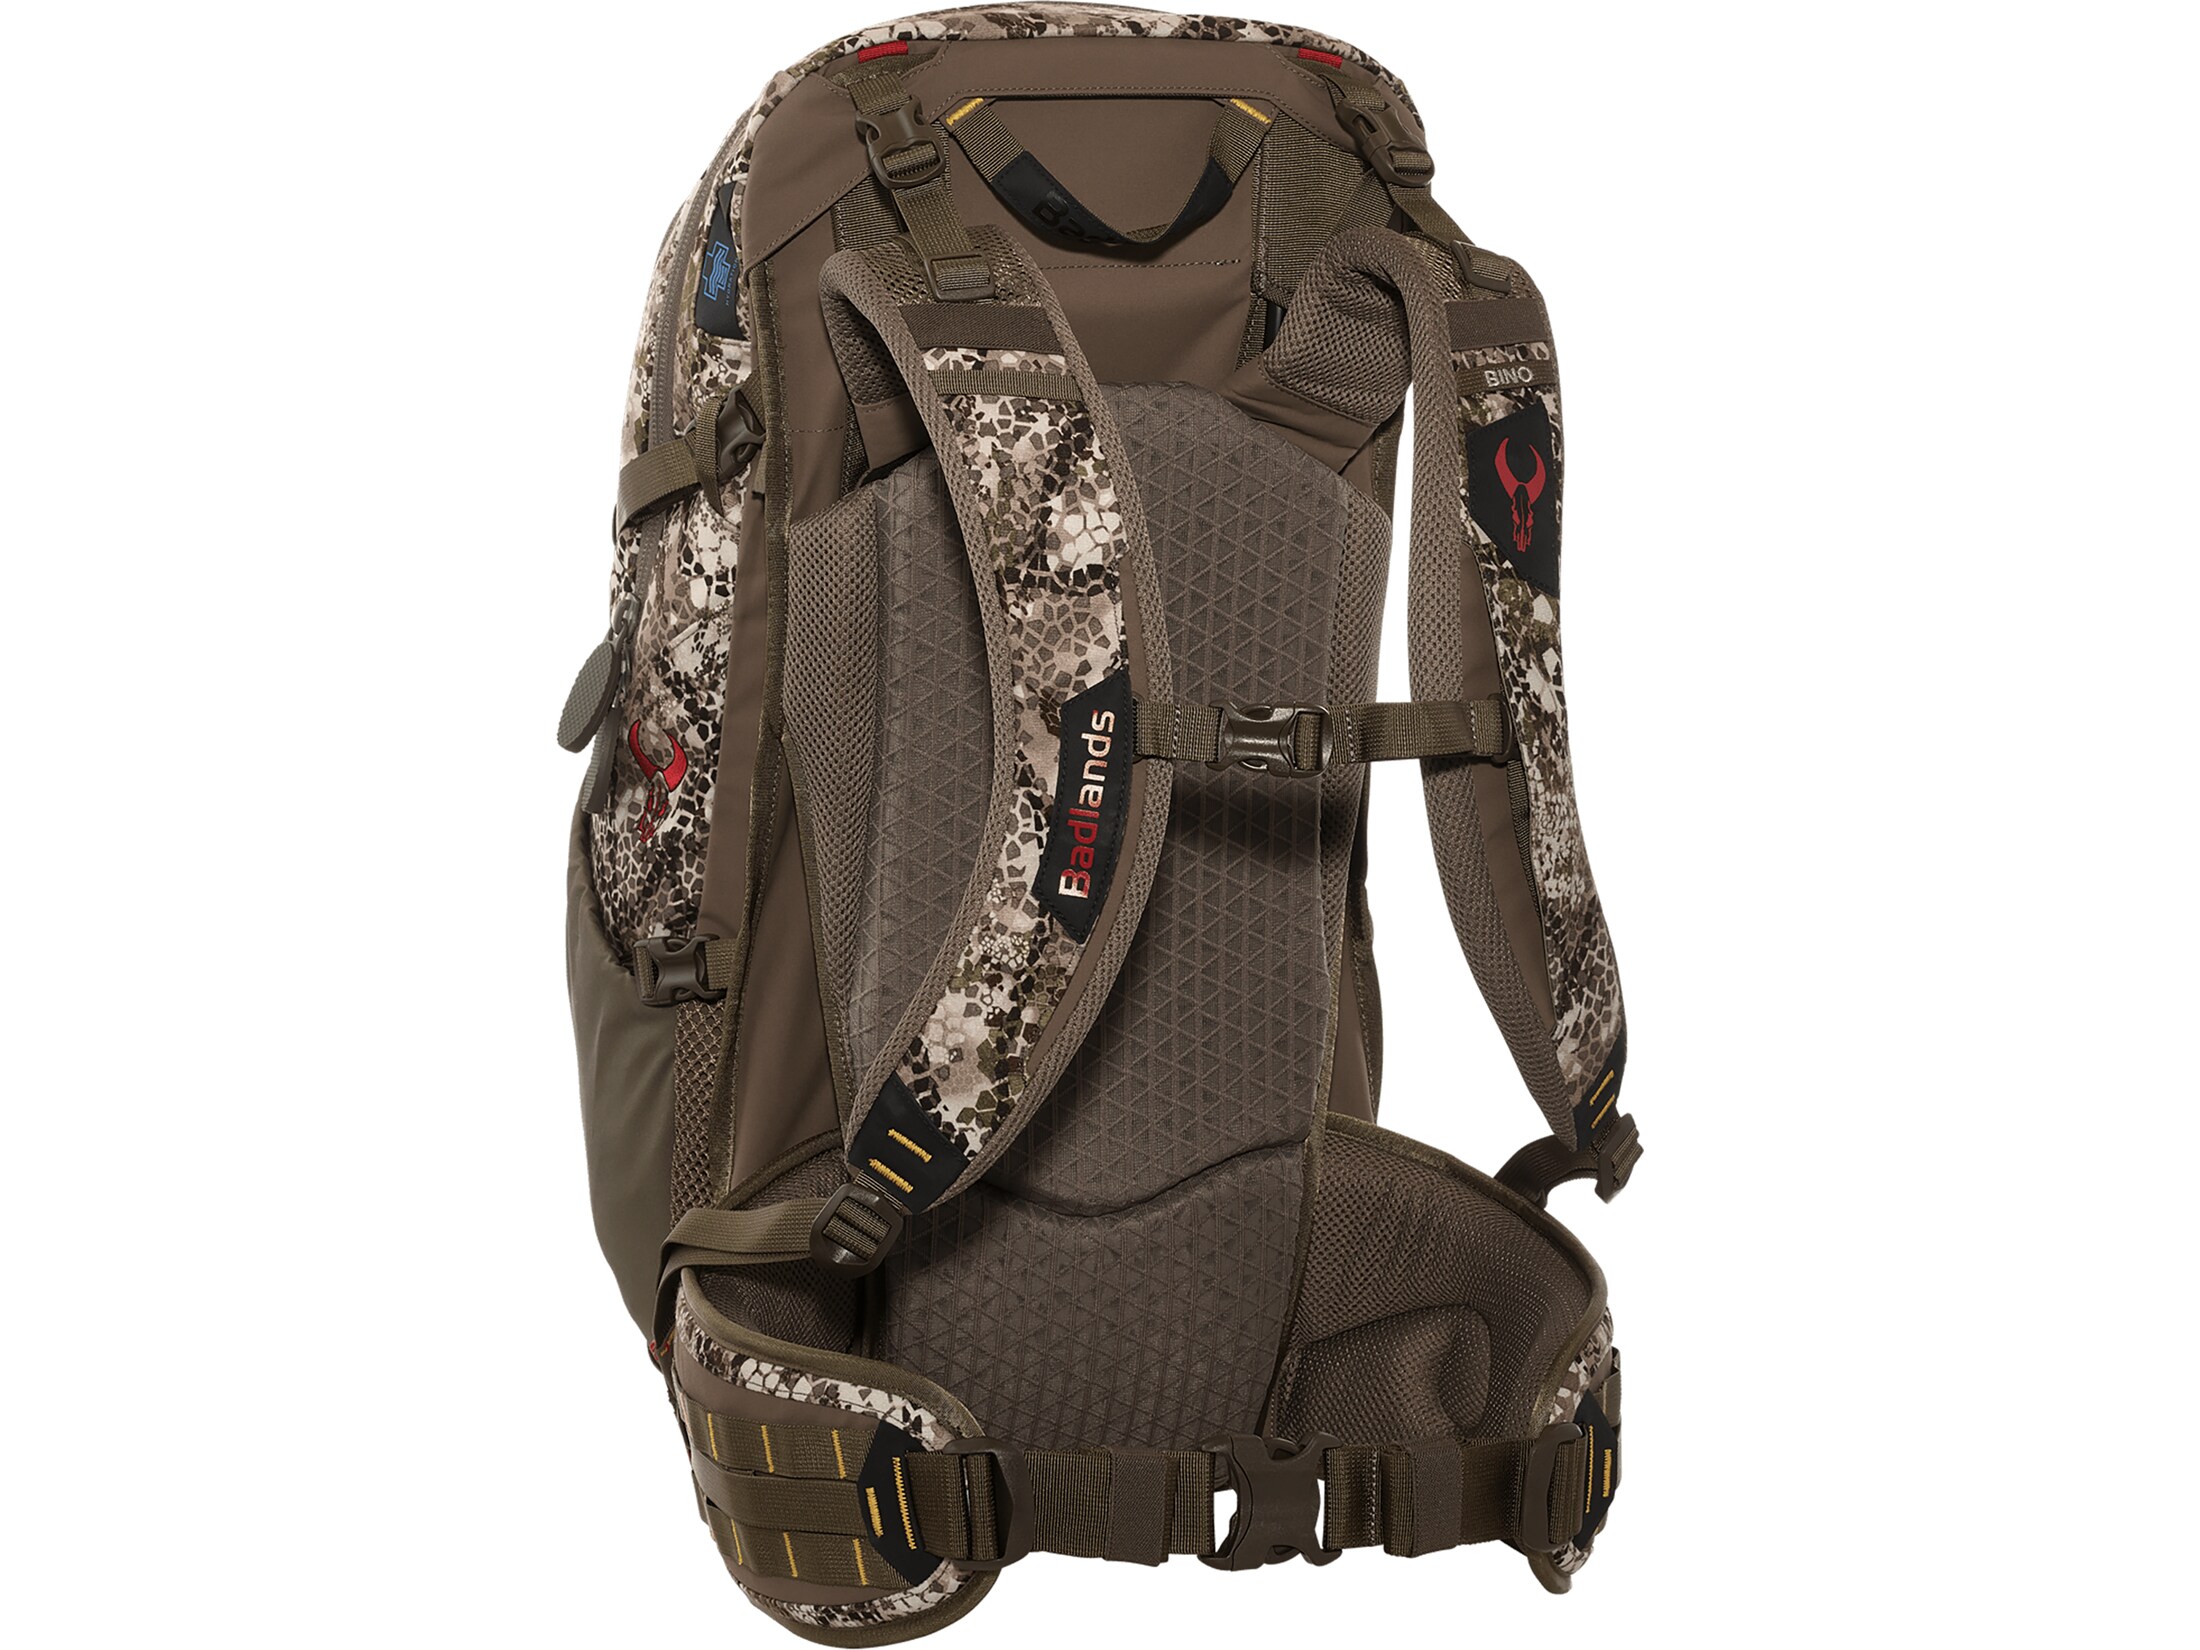 Badlands Backpack Rifle Sling Holder Fits all Backpacks and Binocular Harness 